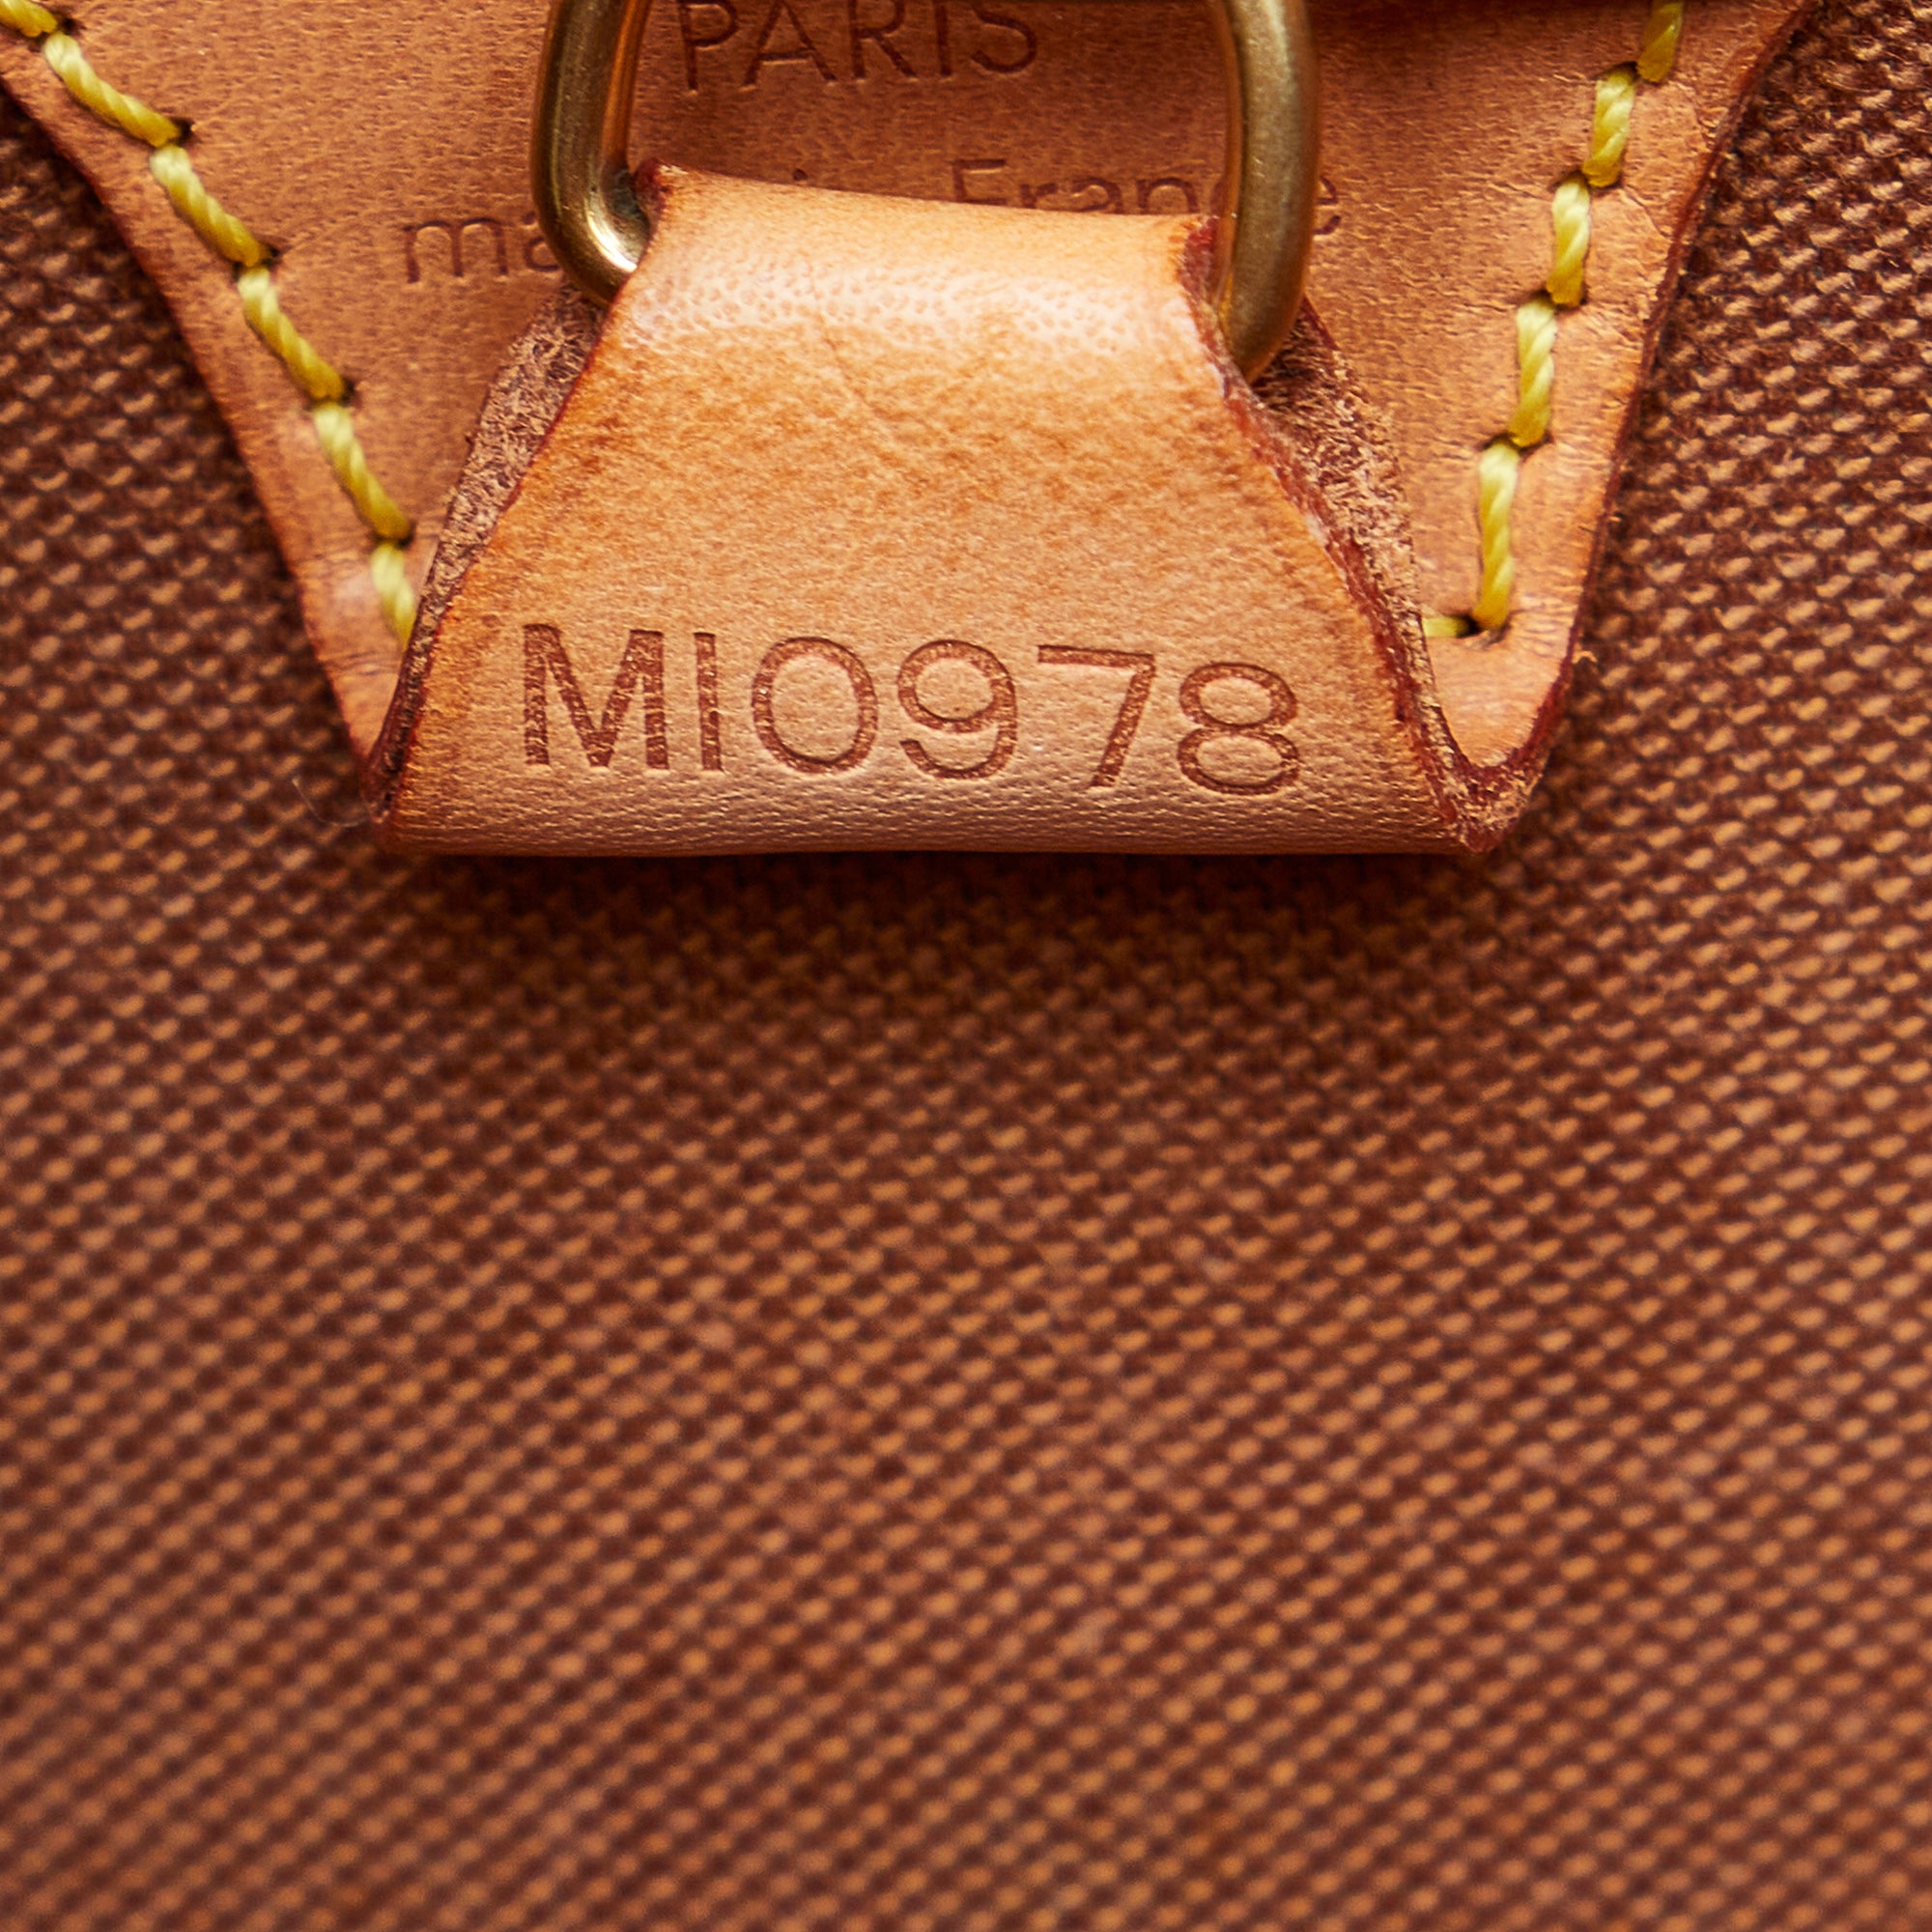 Louis Vuitton Ellipse MM - Good or Bag